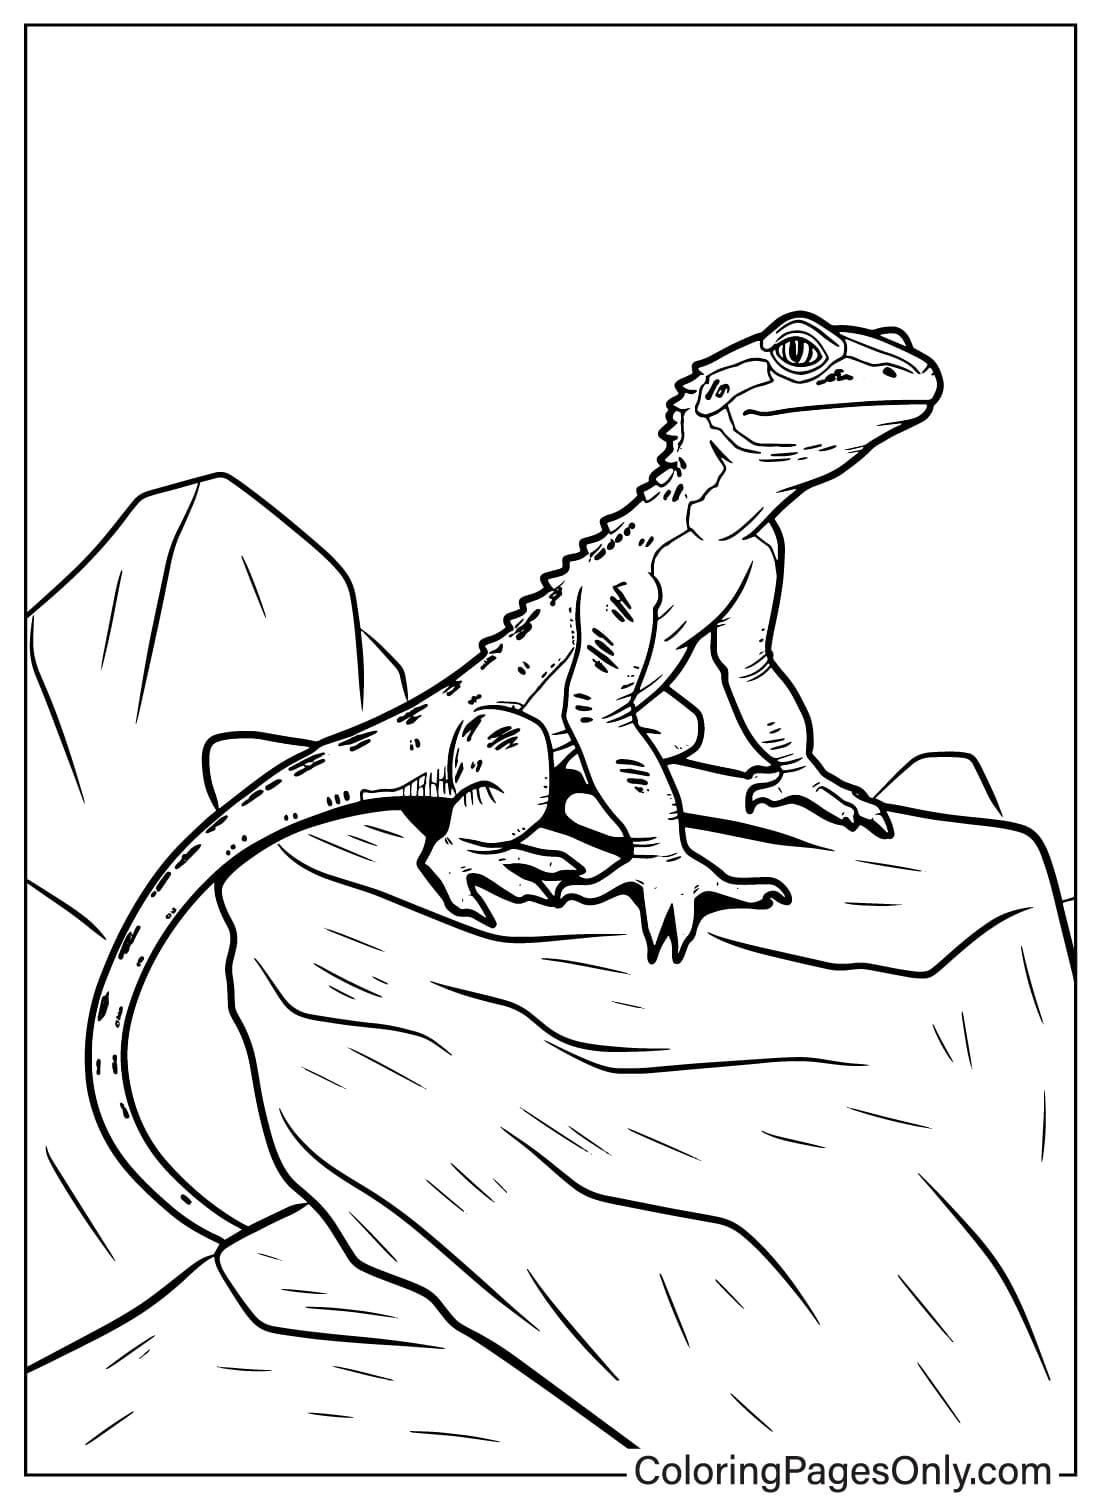 Página para colorear de lagarto imprimible gratis de Lagarto